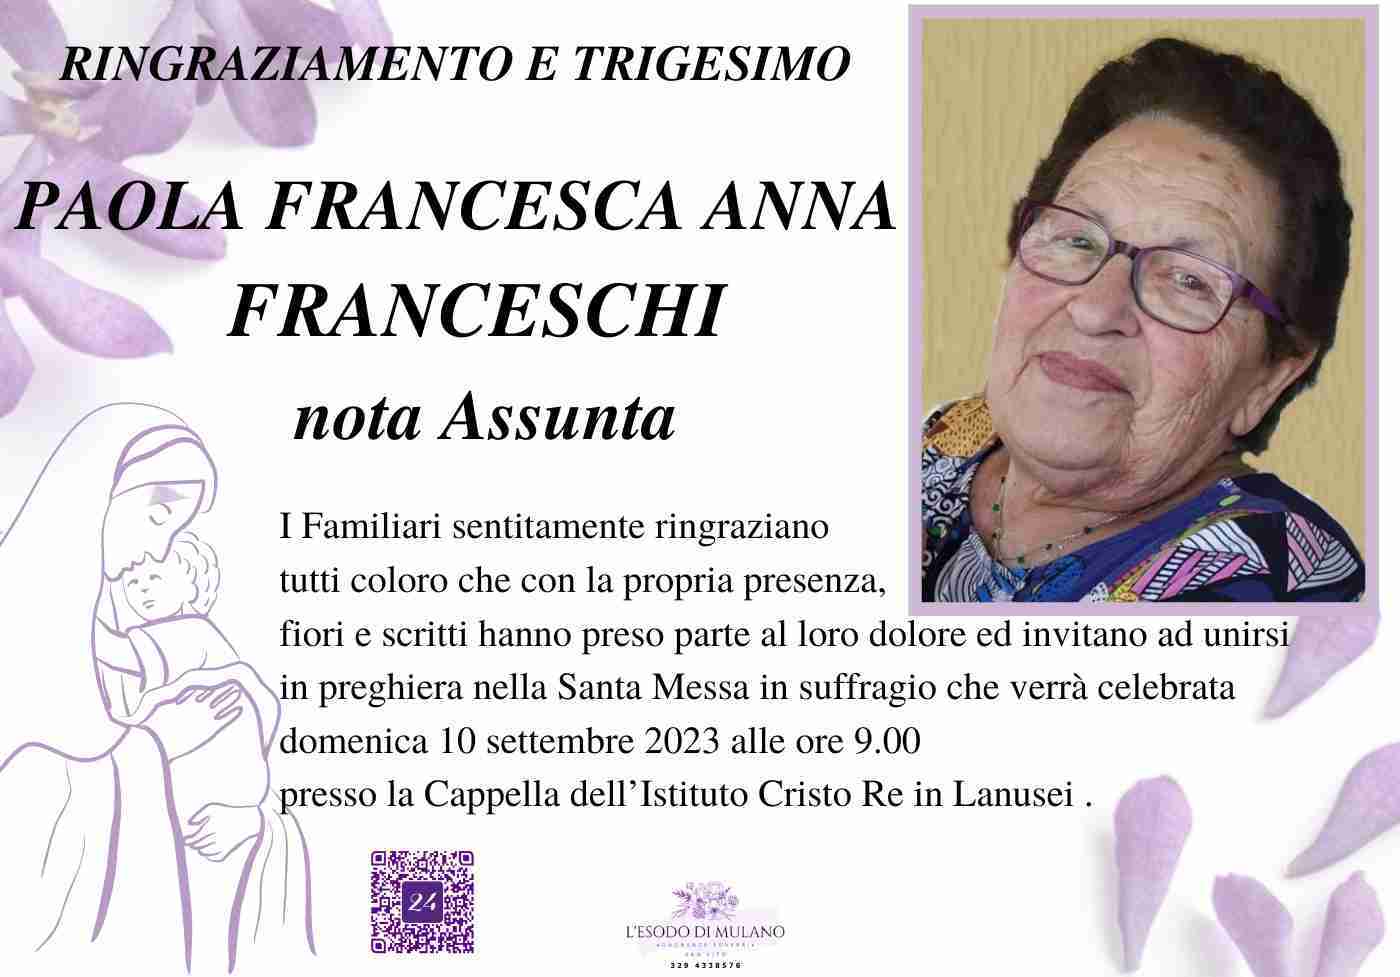 Paola Francesca Anna Franceschi